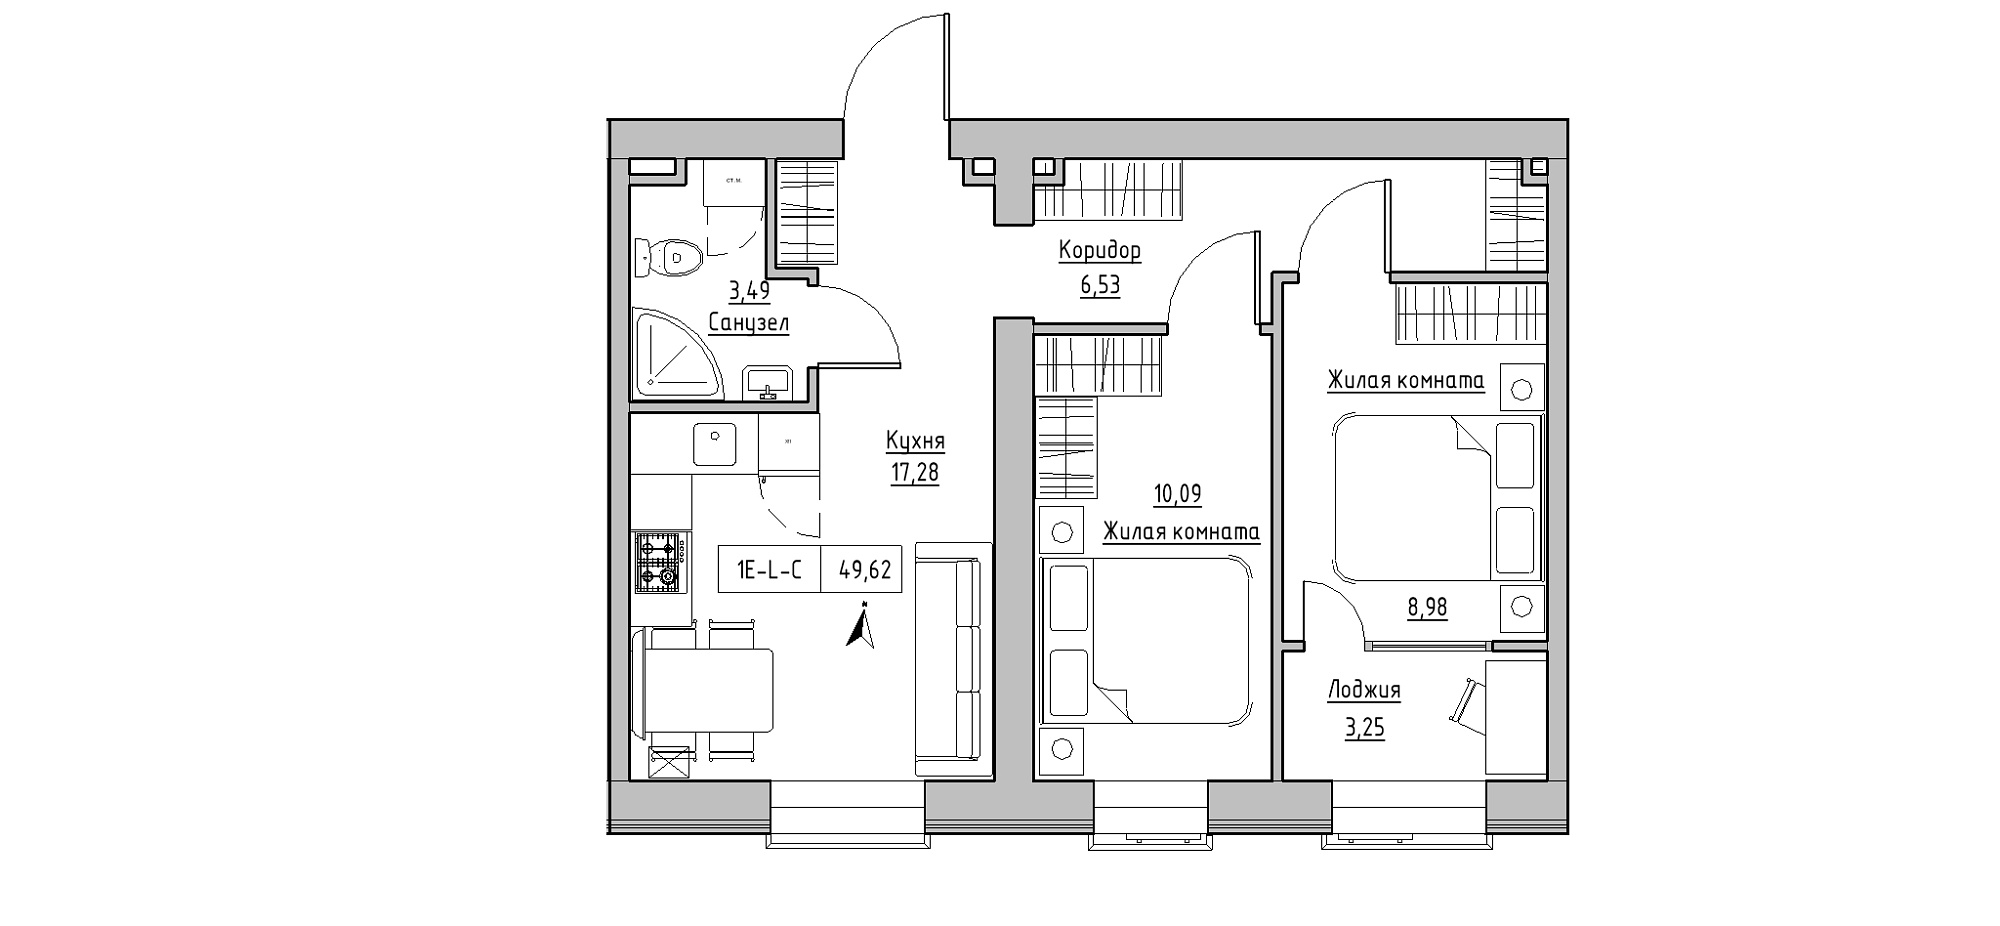 Планировка 2-к квартира площей 49.62м2, KS-020-01/0007.